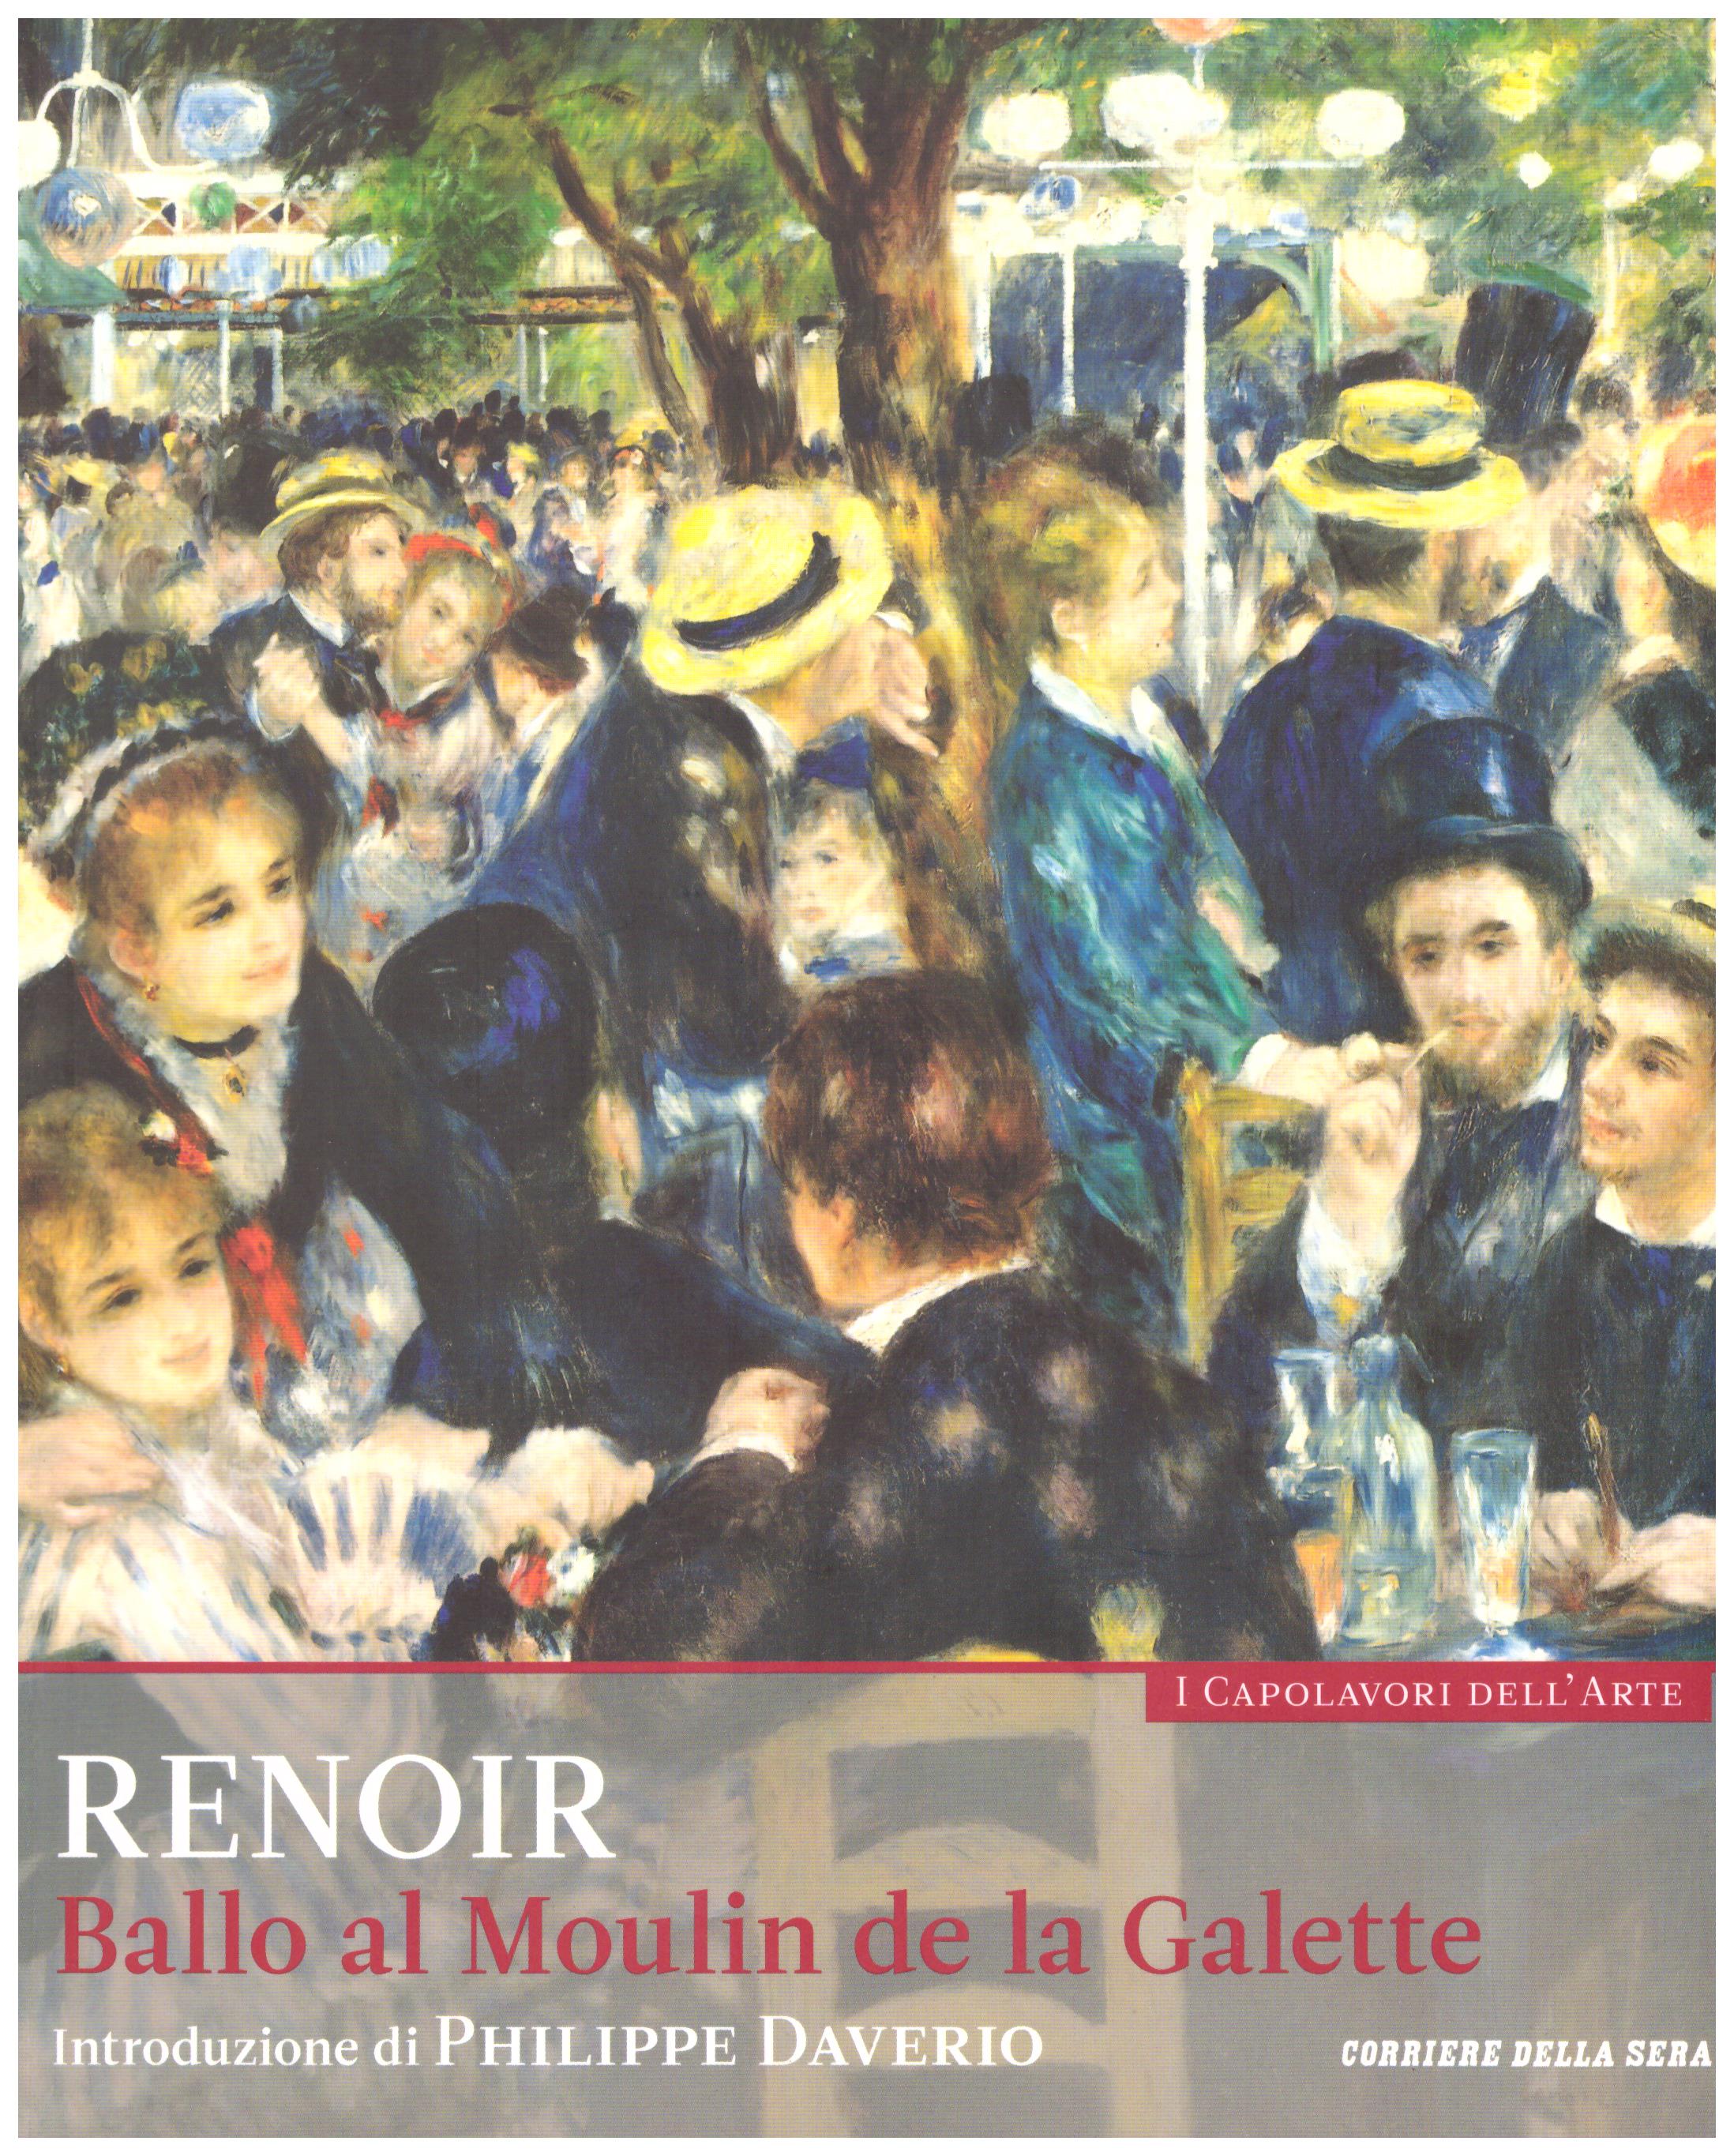 Titolo: I capolavori dell'arte,Renoir n.3  Autore : AA.VV.   Editore: education,it/corriere della sera, 2015